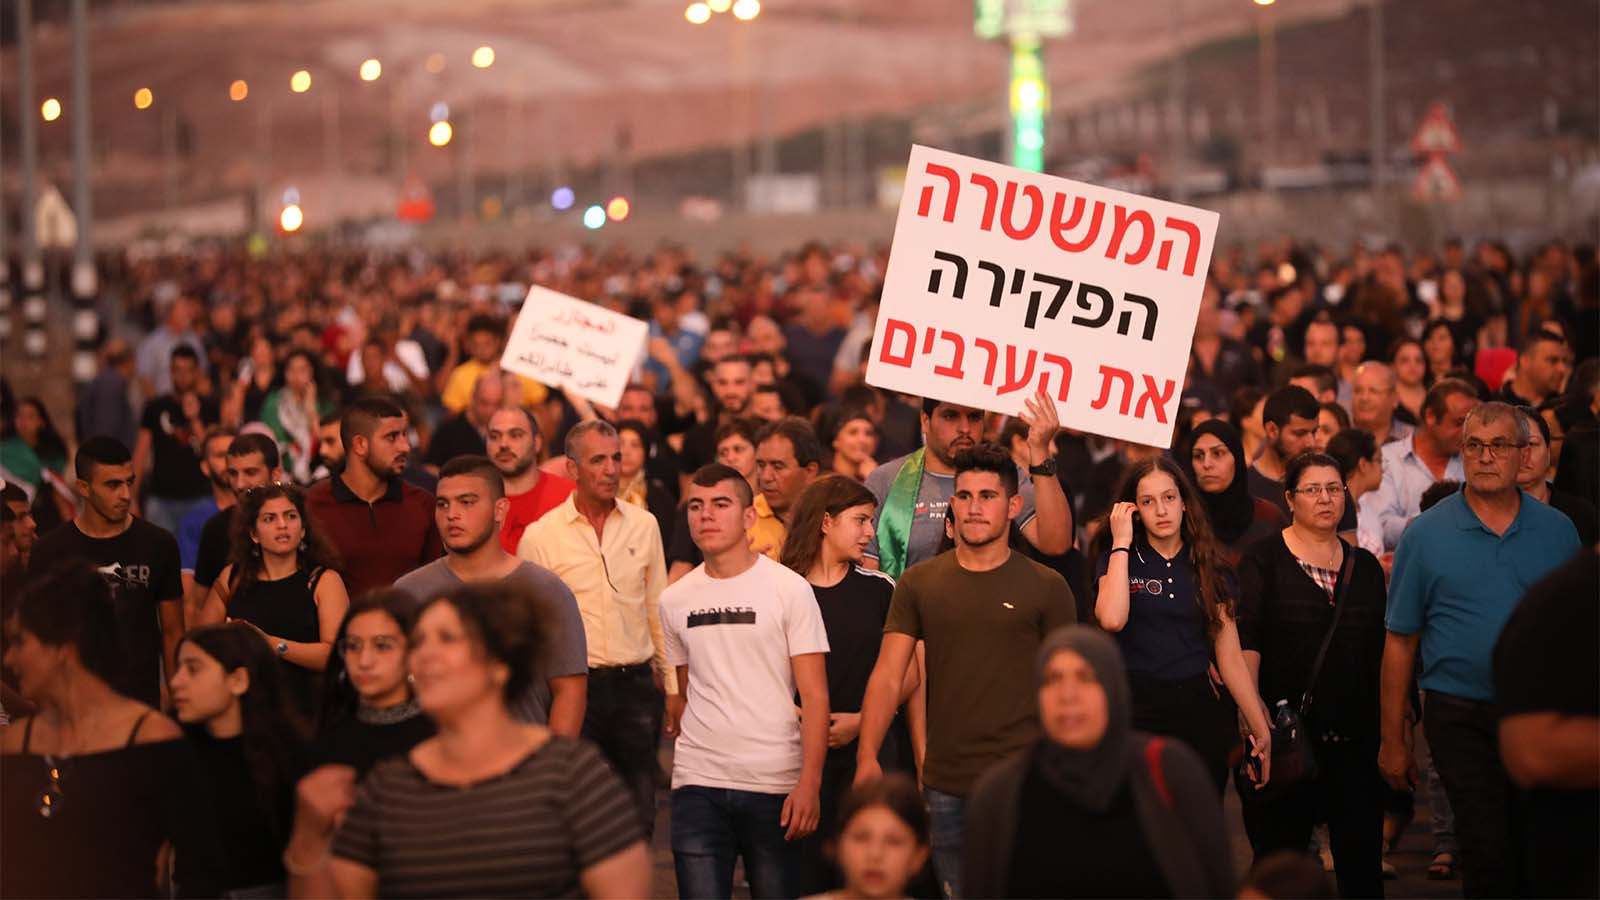 الآلاف يحتجون على العنف في المجتمع العربي، مجد الكروم ، 3 أكتوبر 2019 (تصوير: ديفيد كوهين / flash 90)